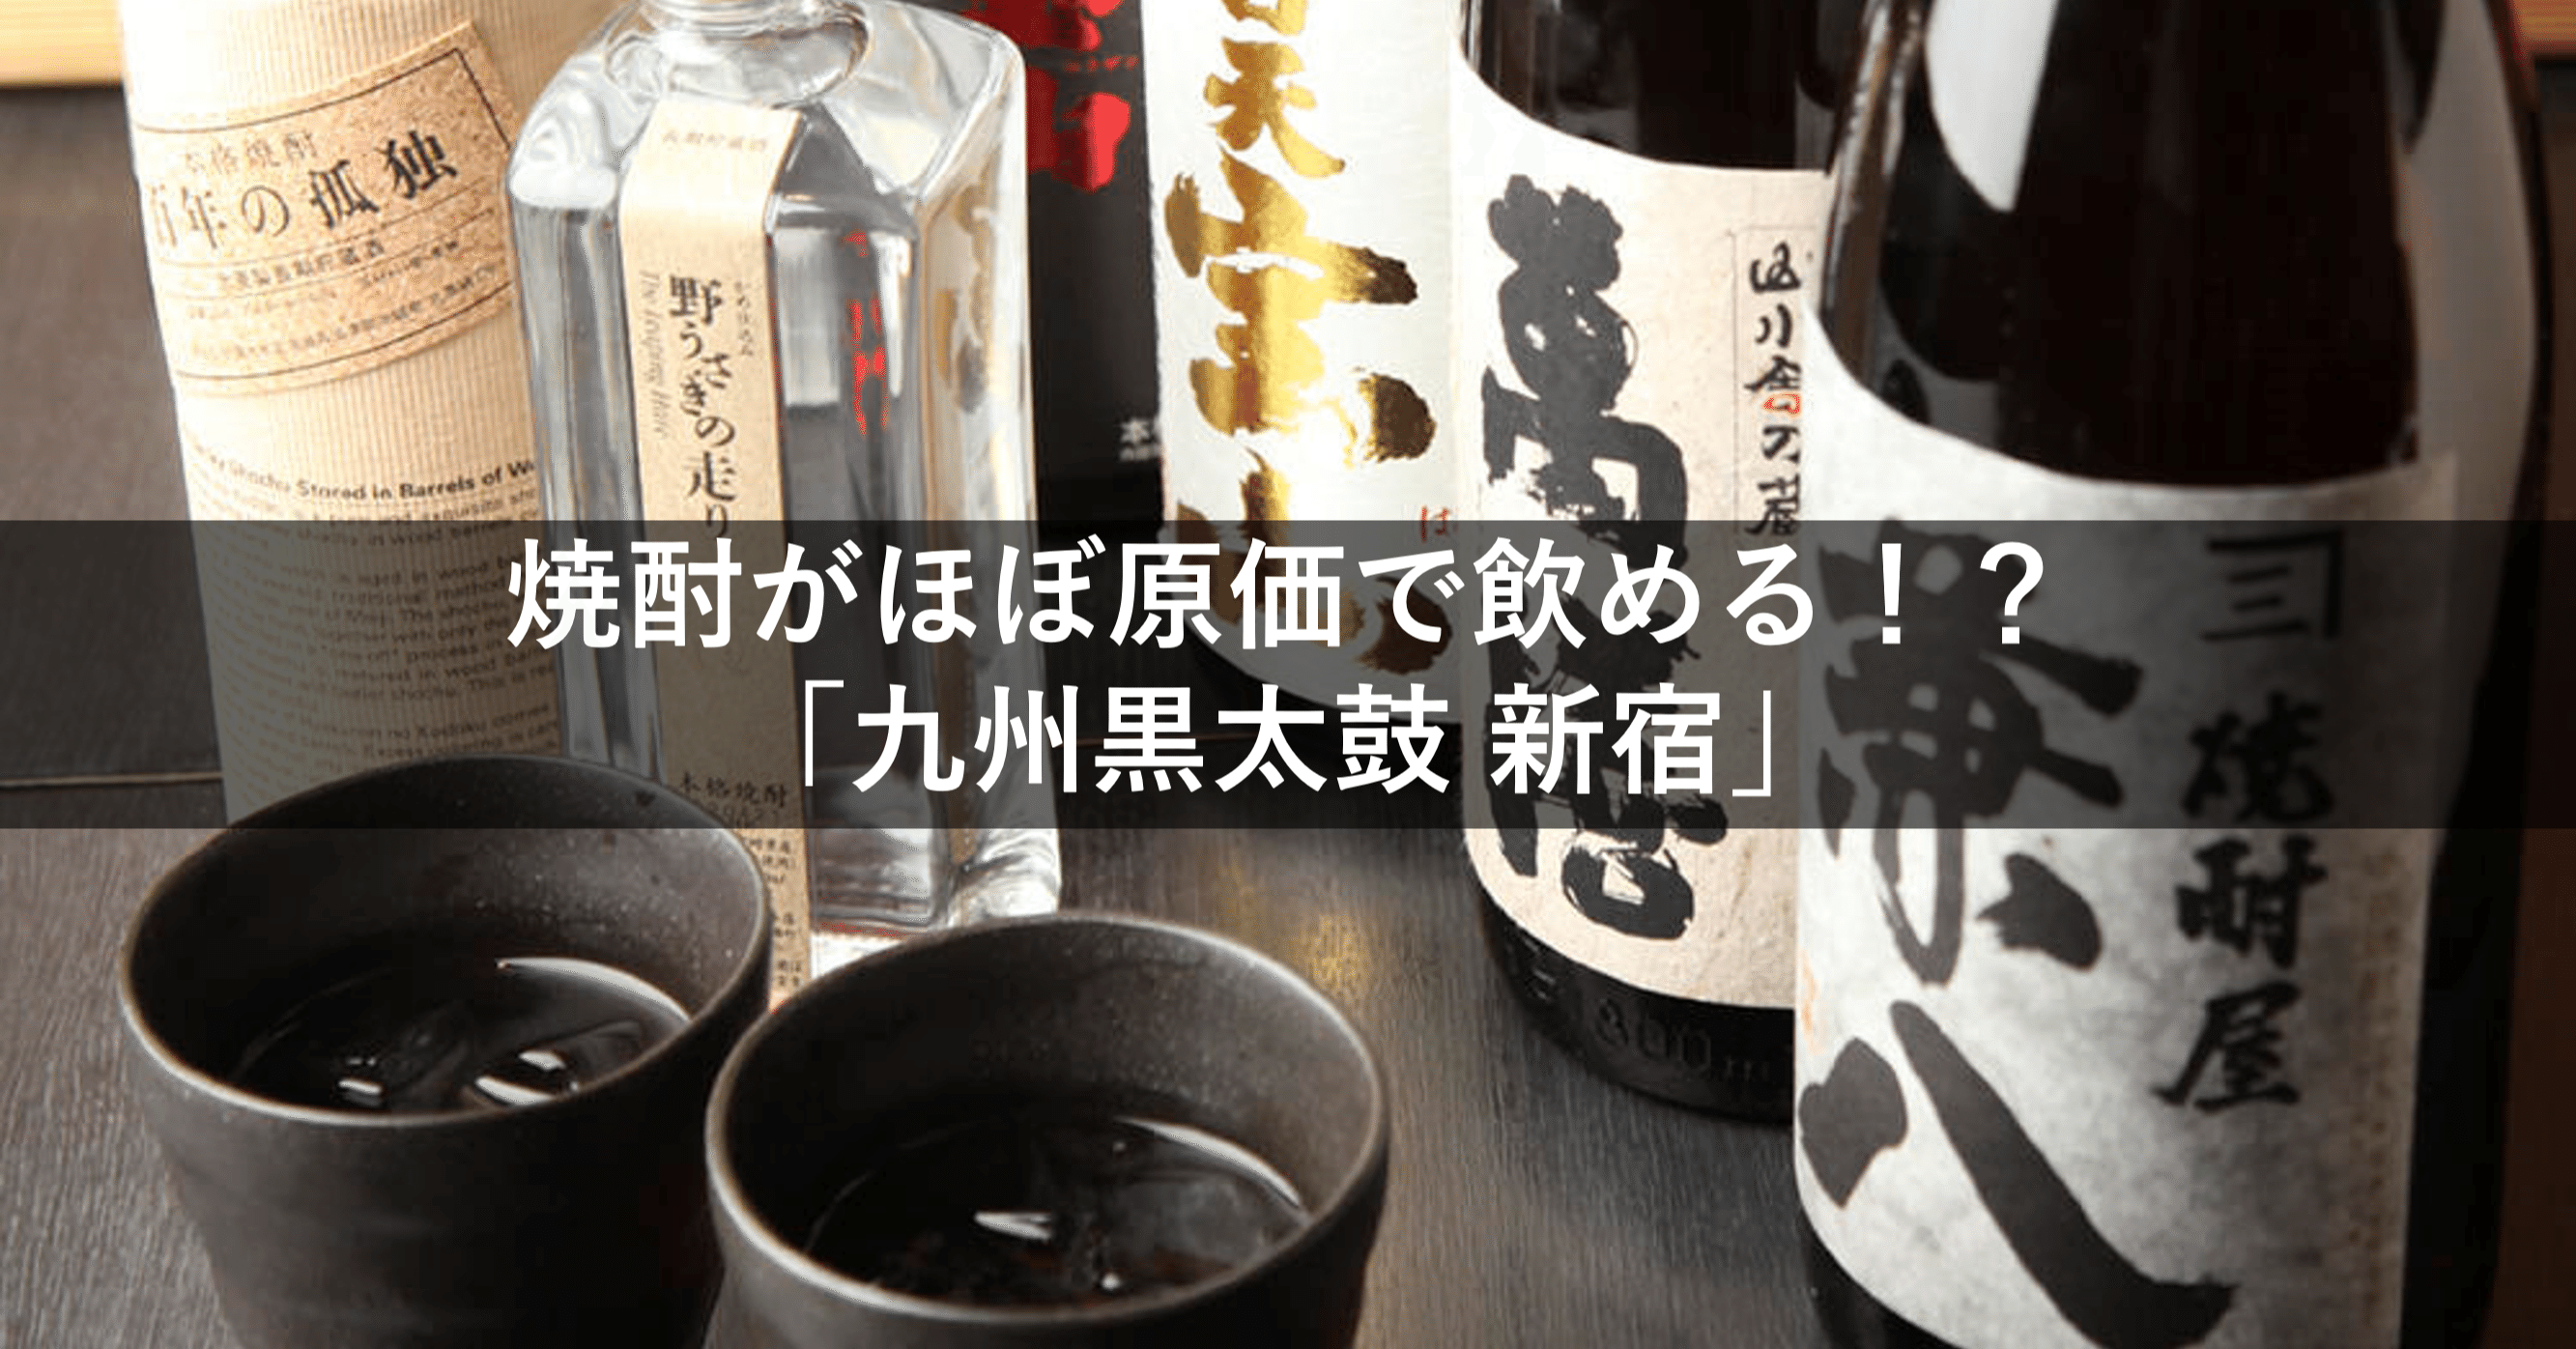 焼酎がほぼ原価で飲める 新宿でおすすめの居酒屋 九州黒太鼓 新宿 美食戦隊グルメンジャー Note